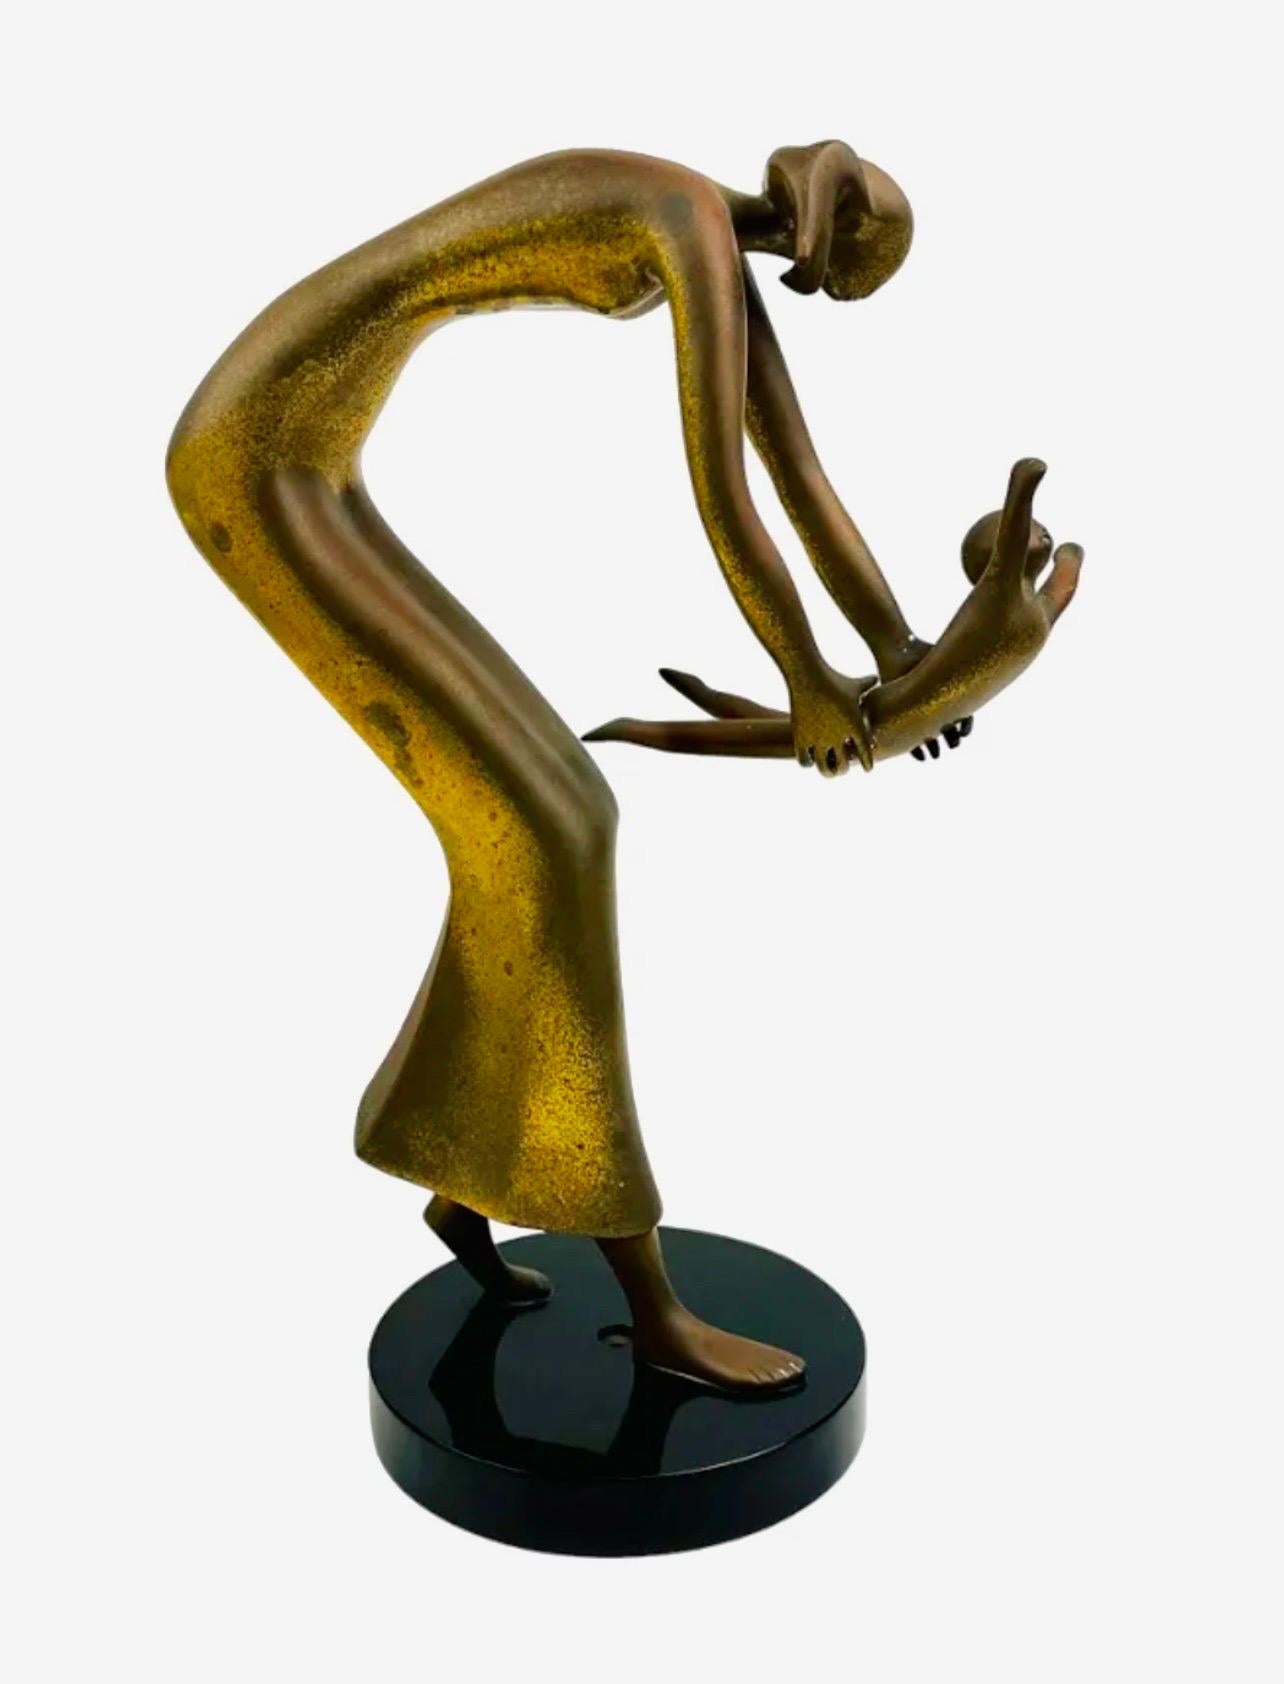 Esther Wertheimer ( Polonaise, Canadienne 1926 - 2016 )
Signé à la main  Wertheimer
Dimensions : 14.5 X 8 X 5.75 in.

Cette sculpture figurative semi-abstraite en bronze représente la tendresse et le lien d'amour partagé entre un parent et son